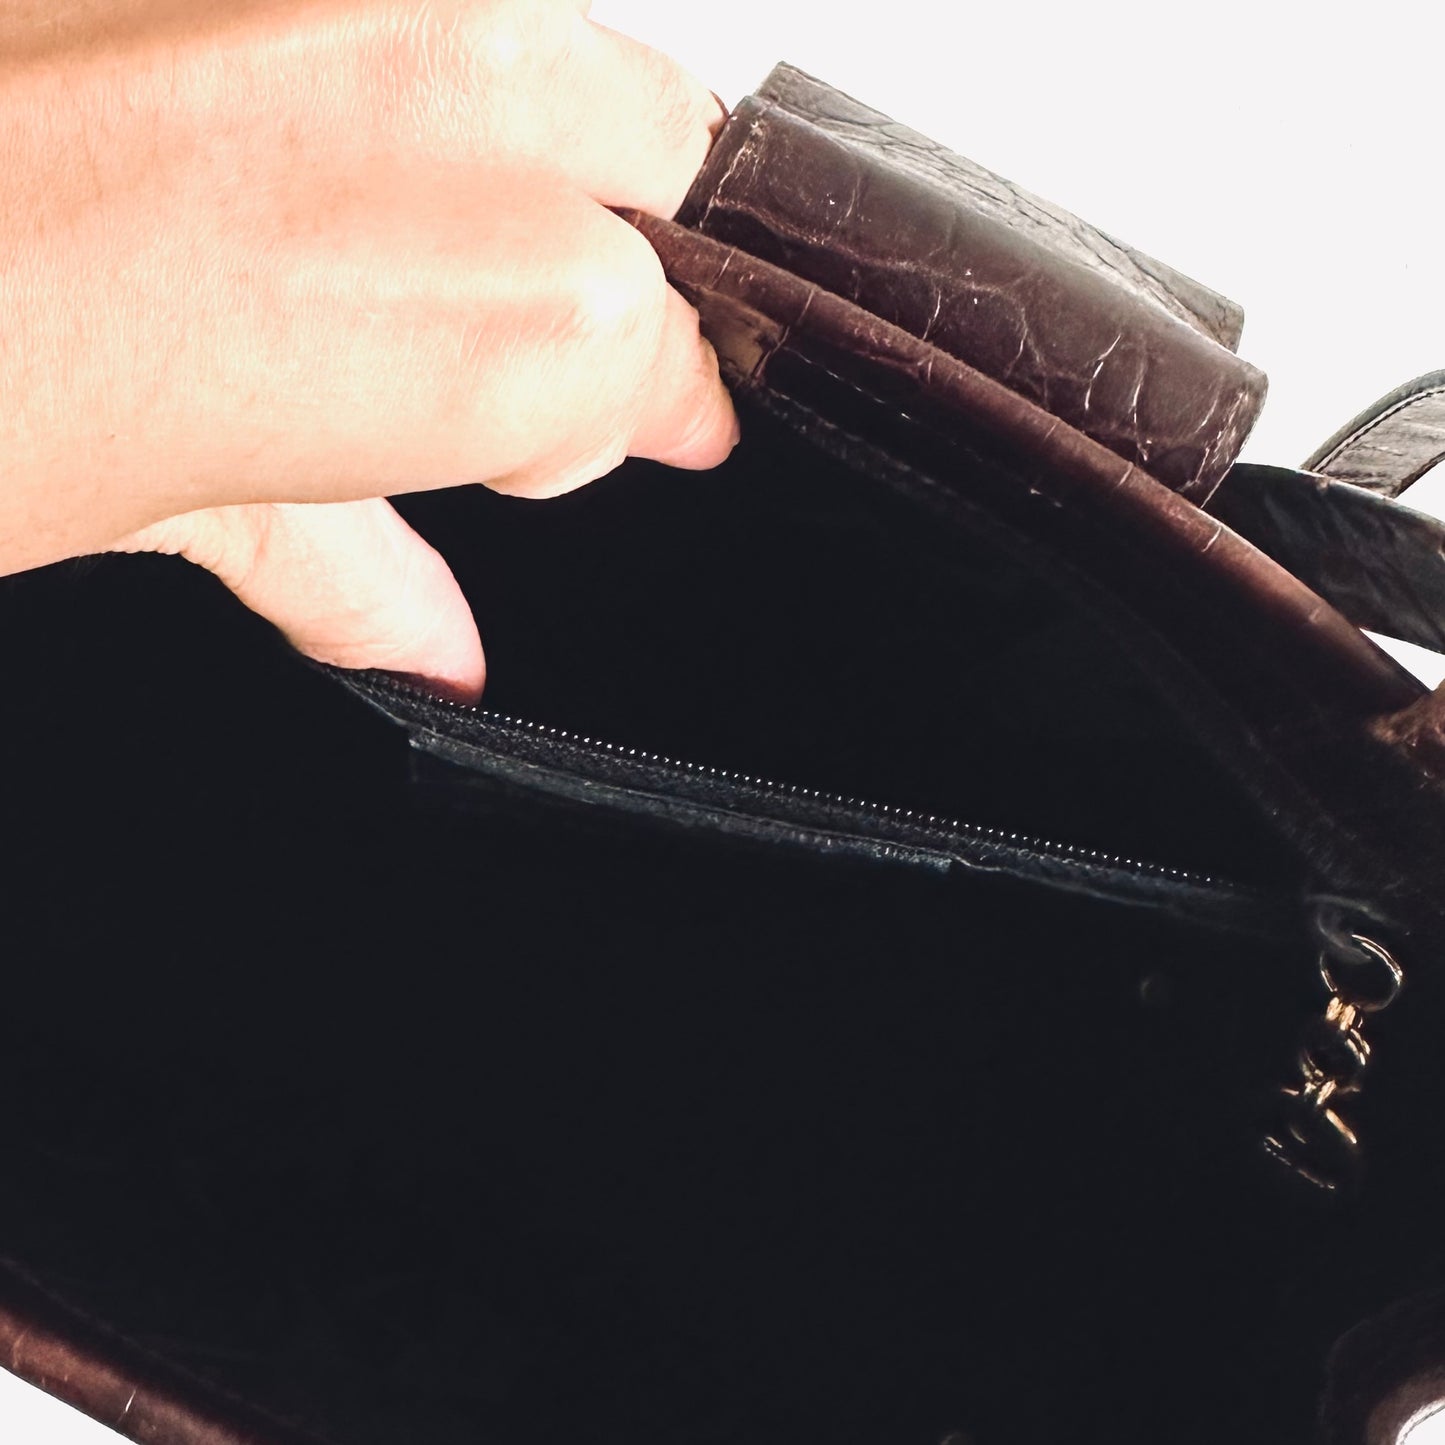 Salvatore Ferragamo Vara Dark Brown GHW Croc Embossed Leather 2-Way Shoulder Sling Top Handle Kelly Bag